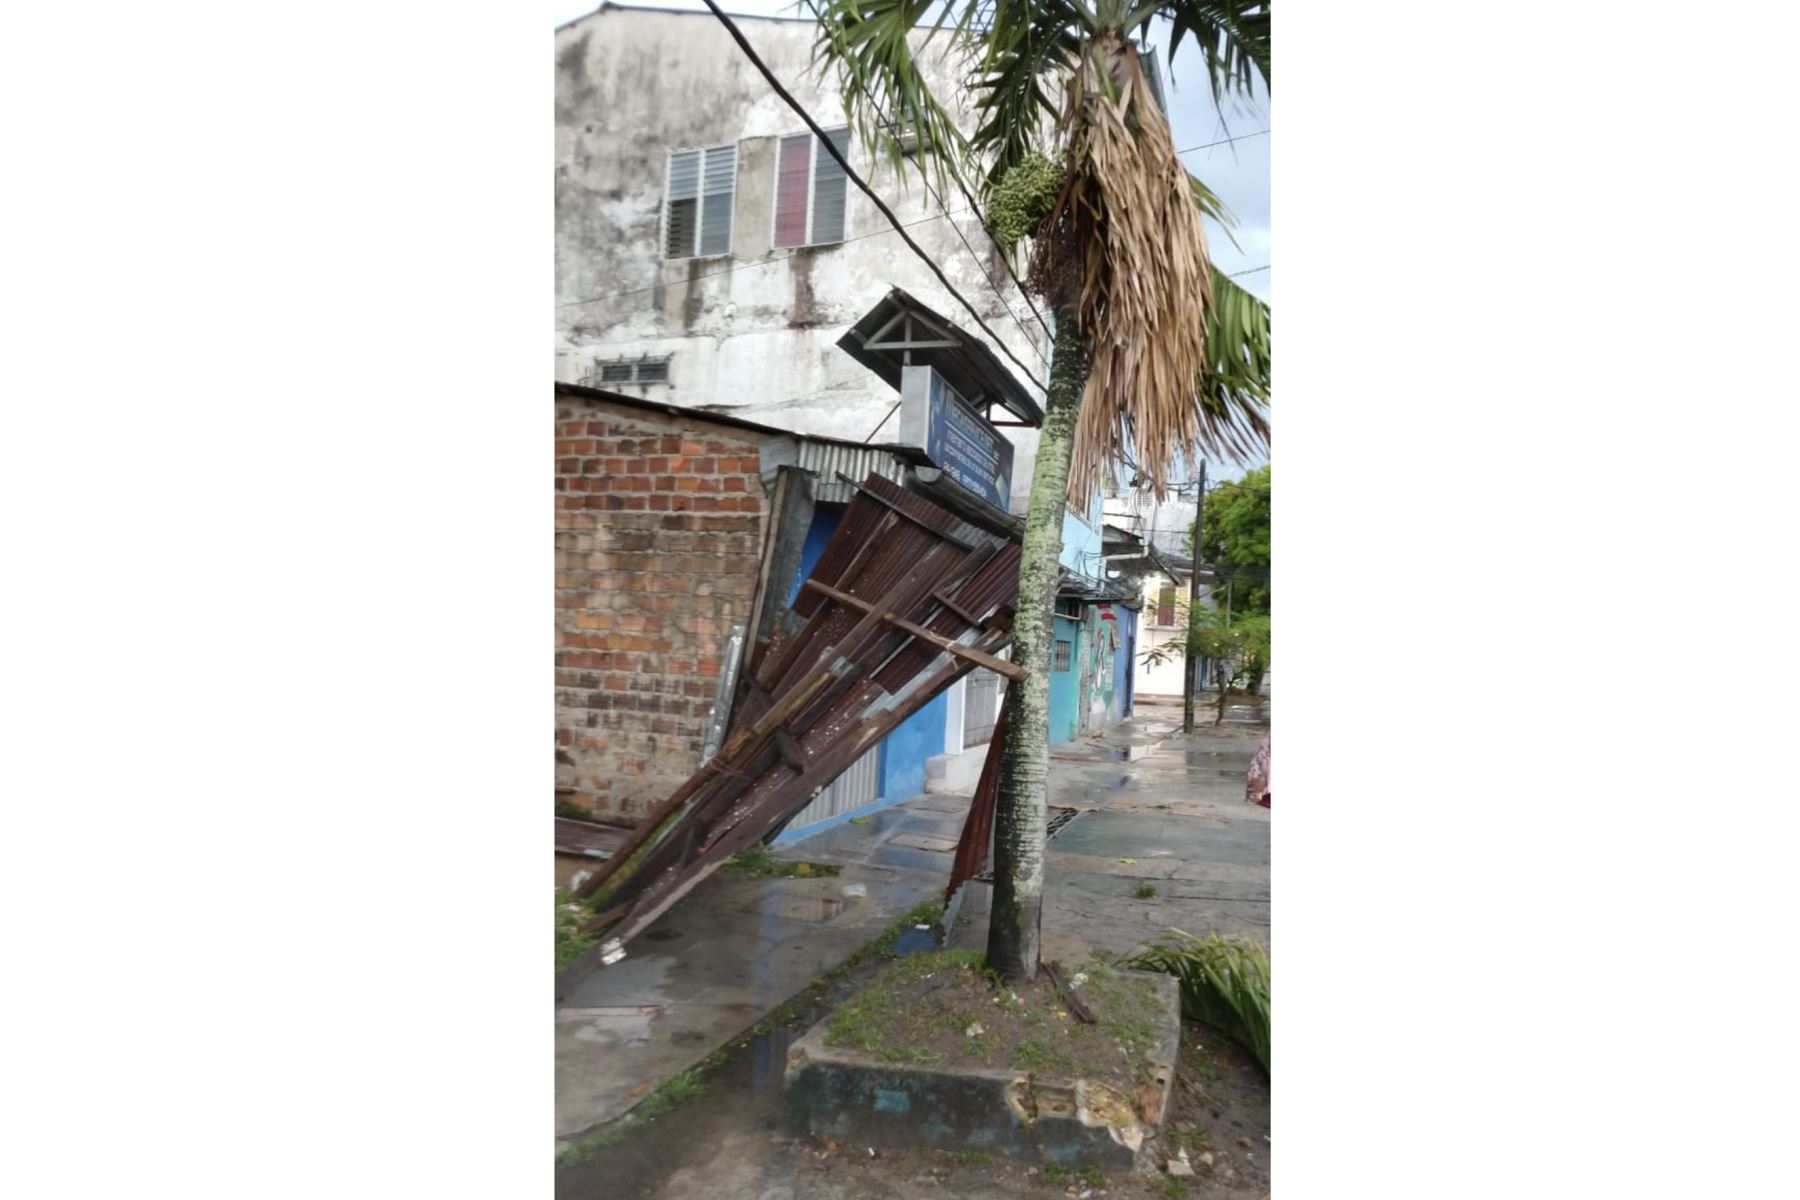 Ráfagas de viento de 50 kilómetros por hora se registraron en la ciudad de Iquitos, región Loreto. Foto: Twitter Senamhi